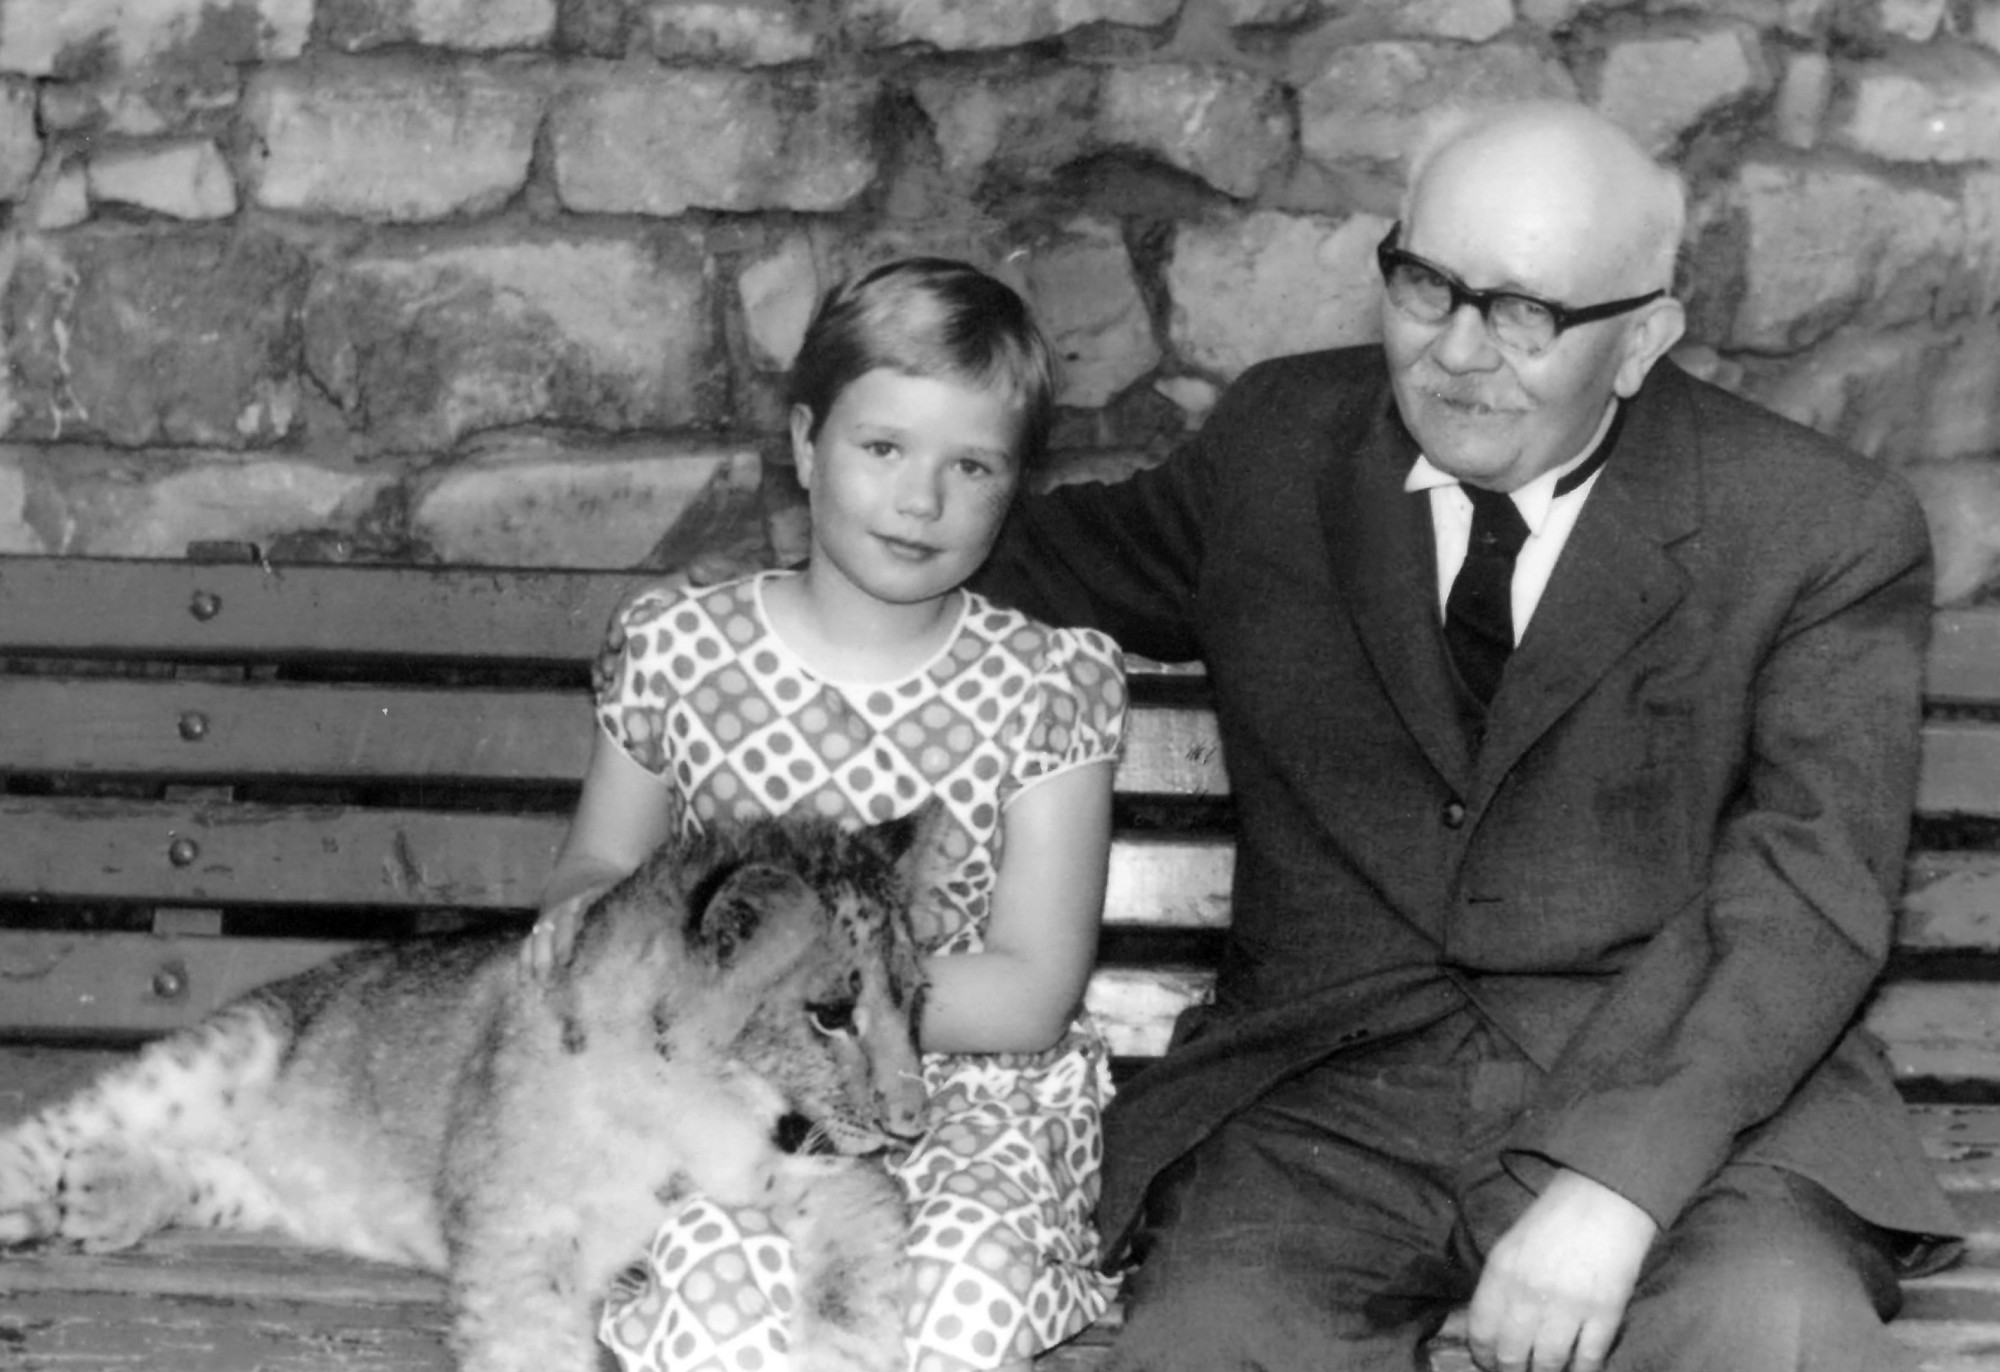 Auf einer Bank sitzen nebeneinander ein junges Mädchen und ein alter Mann mit ihren Blicken zur Kamera gewandt. Auf dem Schoß des Mädchens liegt ein Löwenbaby.